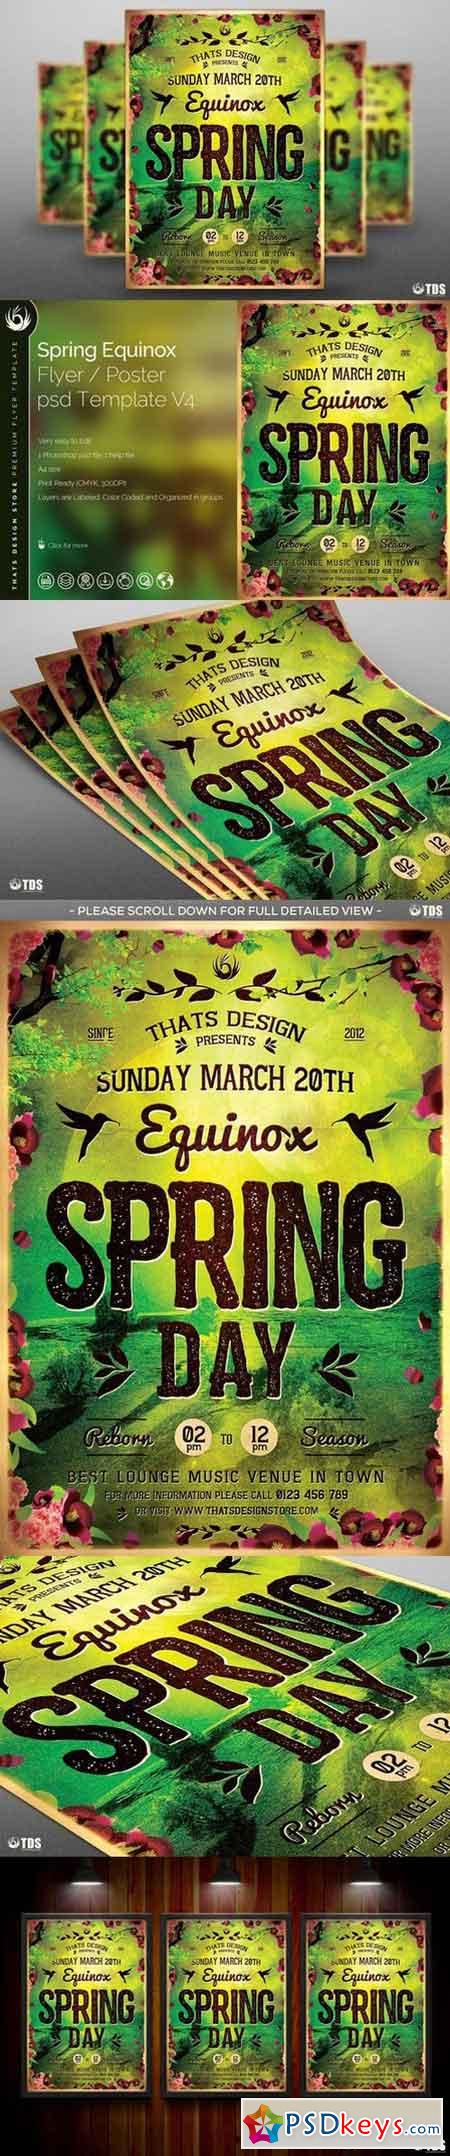 Spring Equinox Flyer Template V4 581903